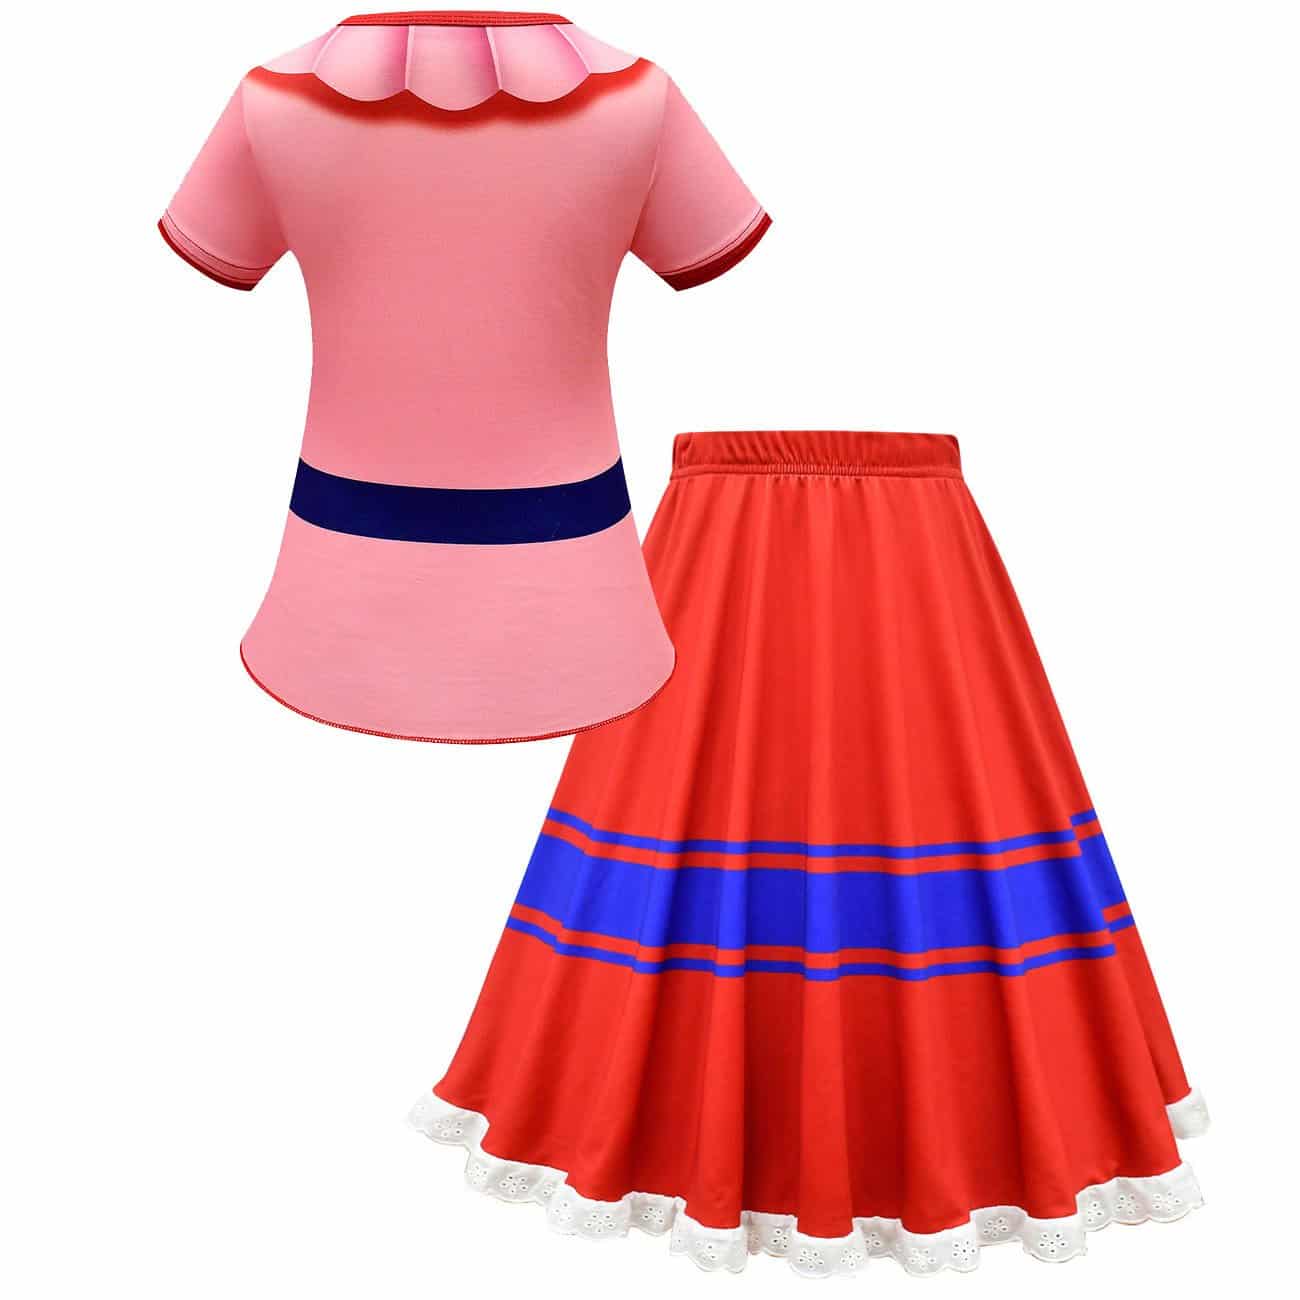 Encanto Dress for Girls Two-Piece Princess Dress